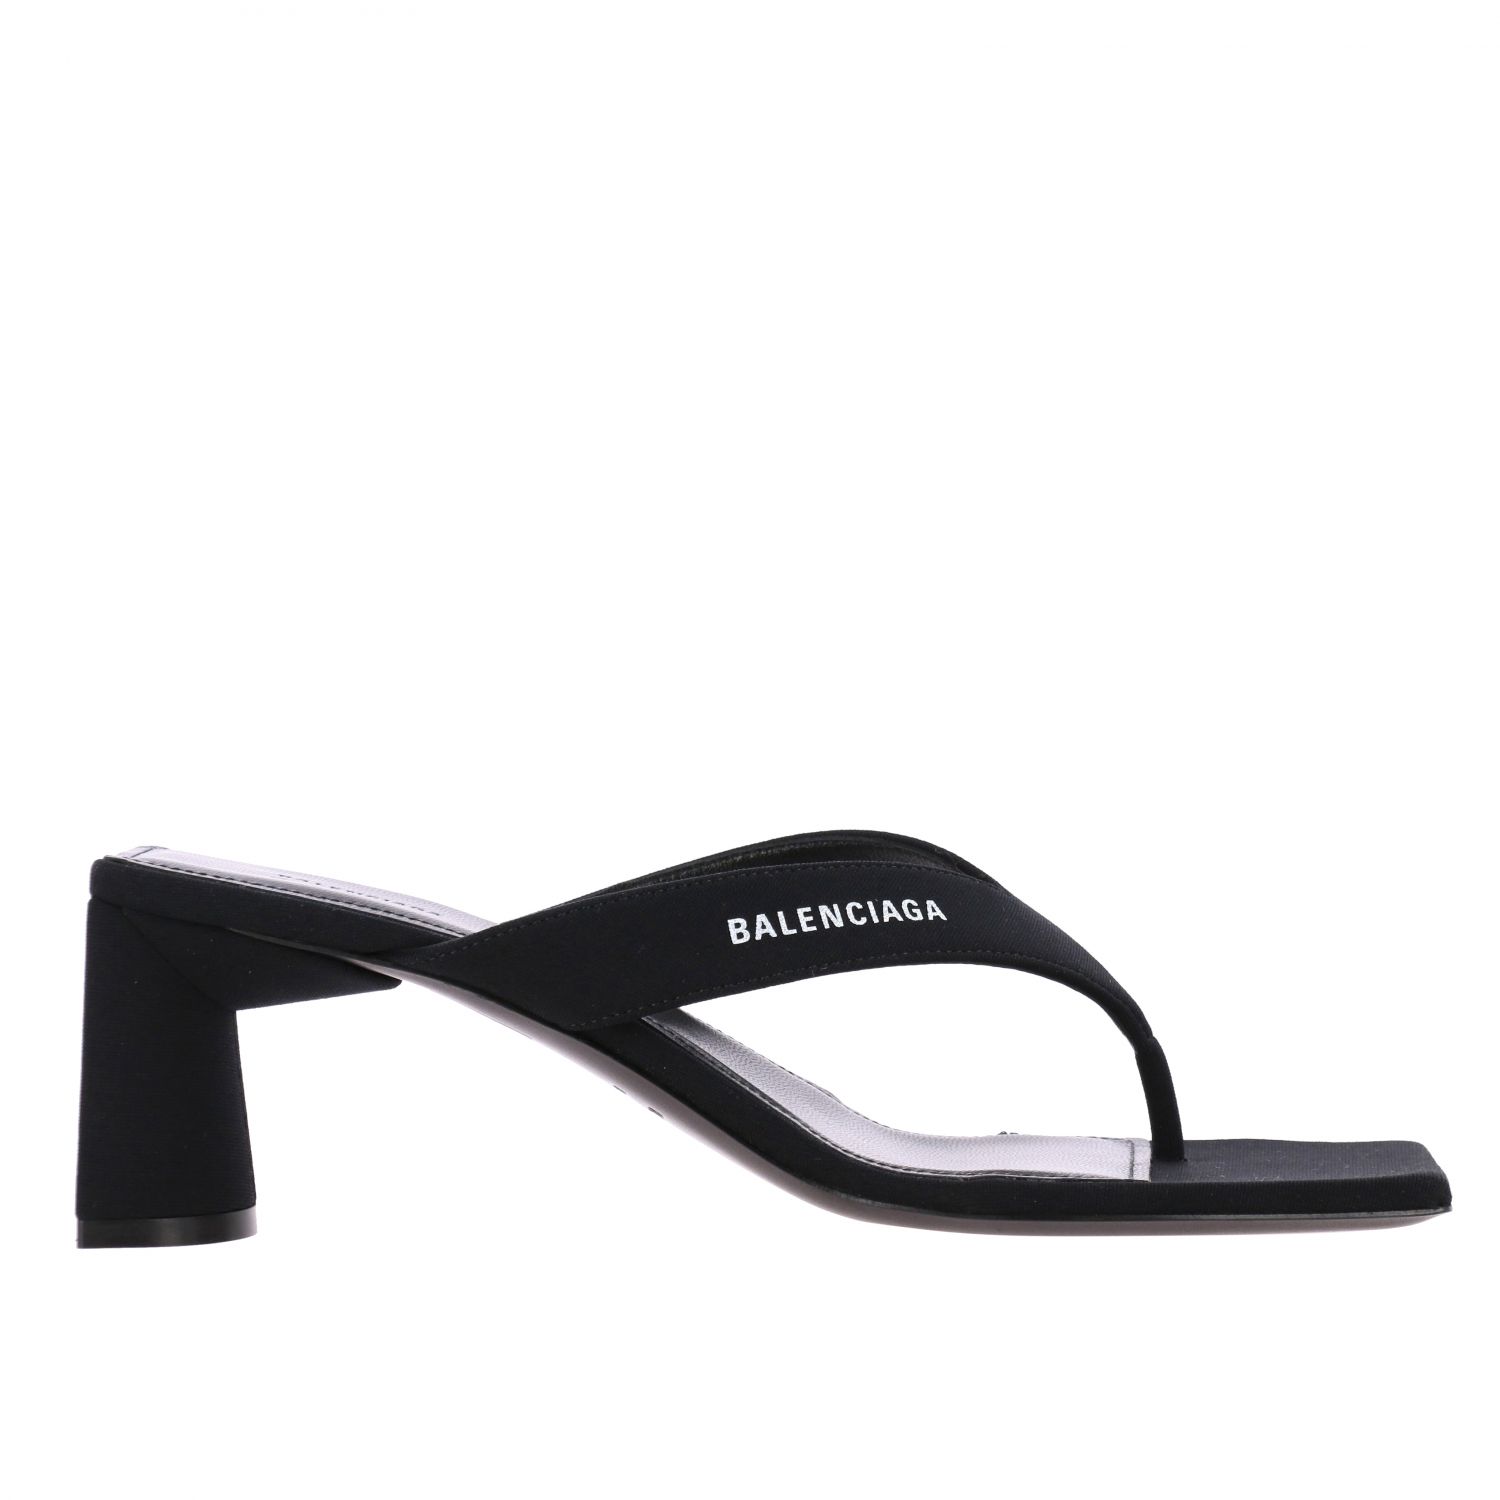 Heeled sandals Balenciaga: Shoes women Balenciaga black 1